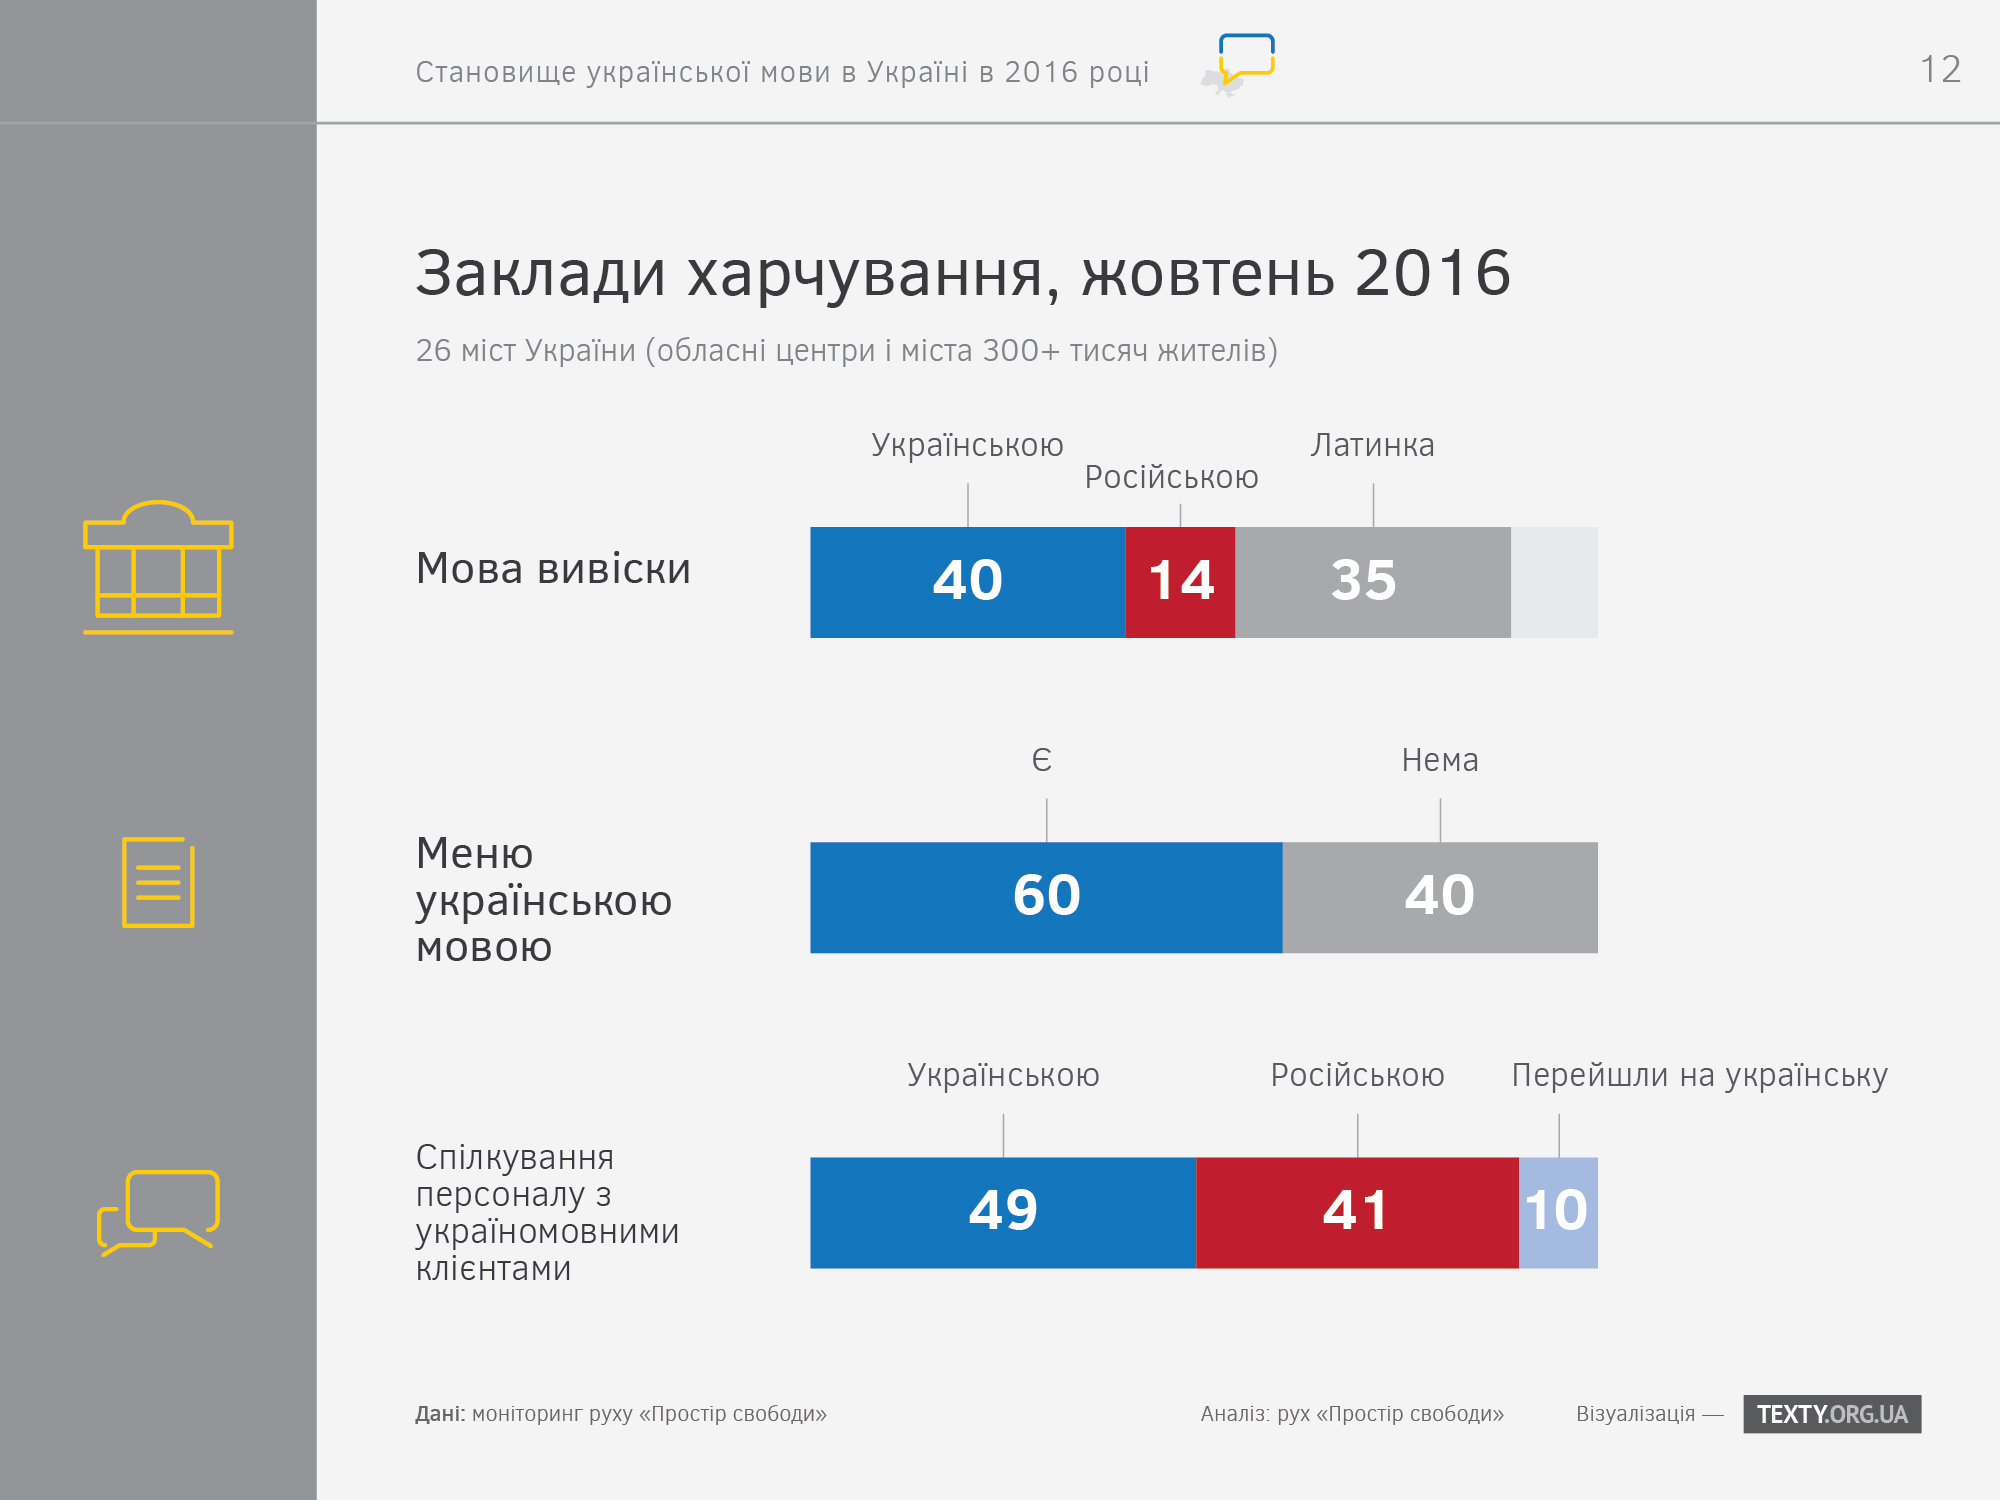 ukrayinska-mova-v-zakladah-harchuvannya-2016-infografika